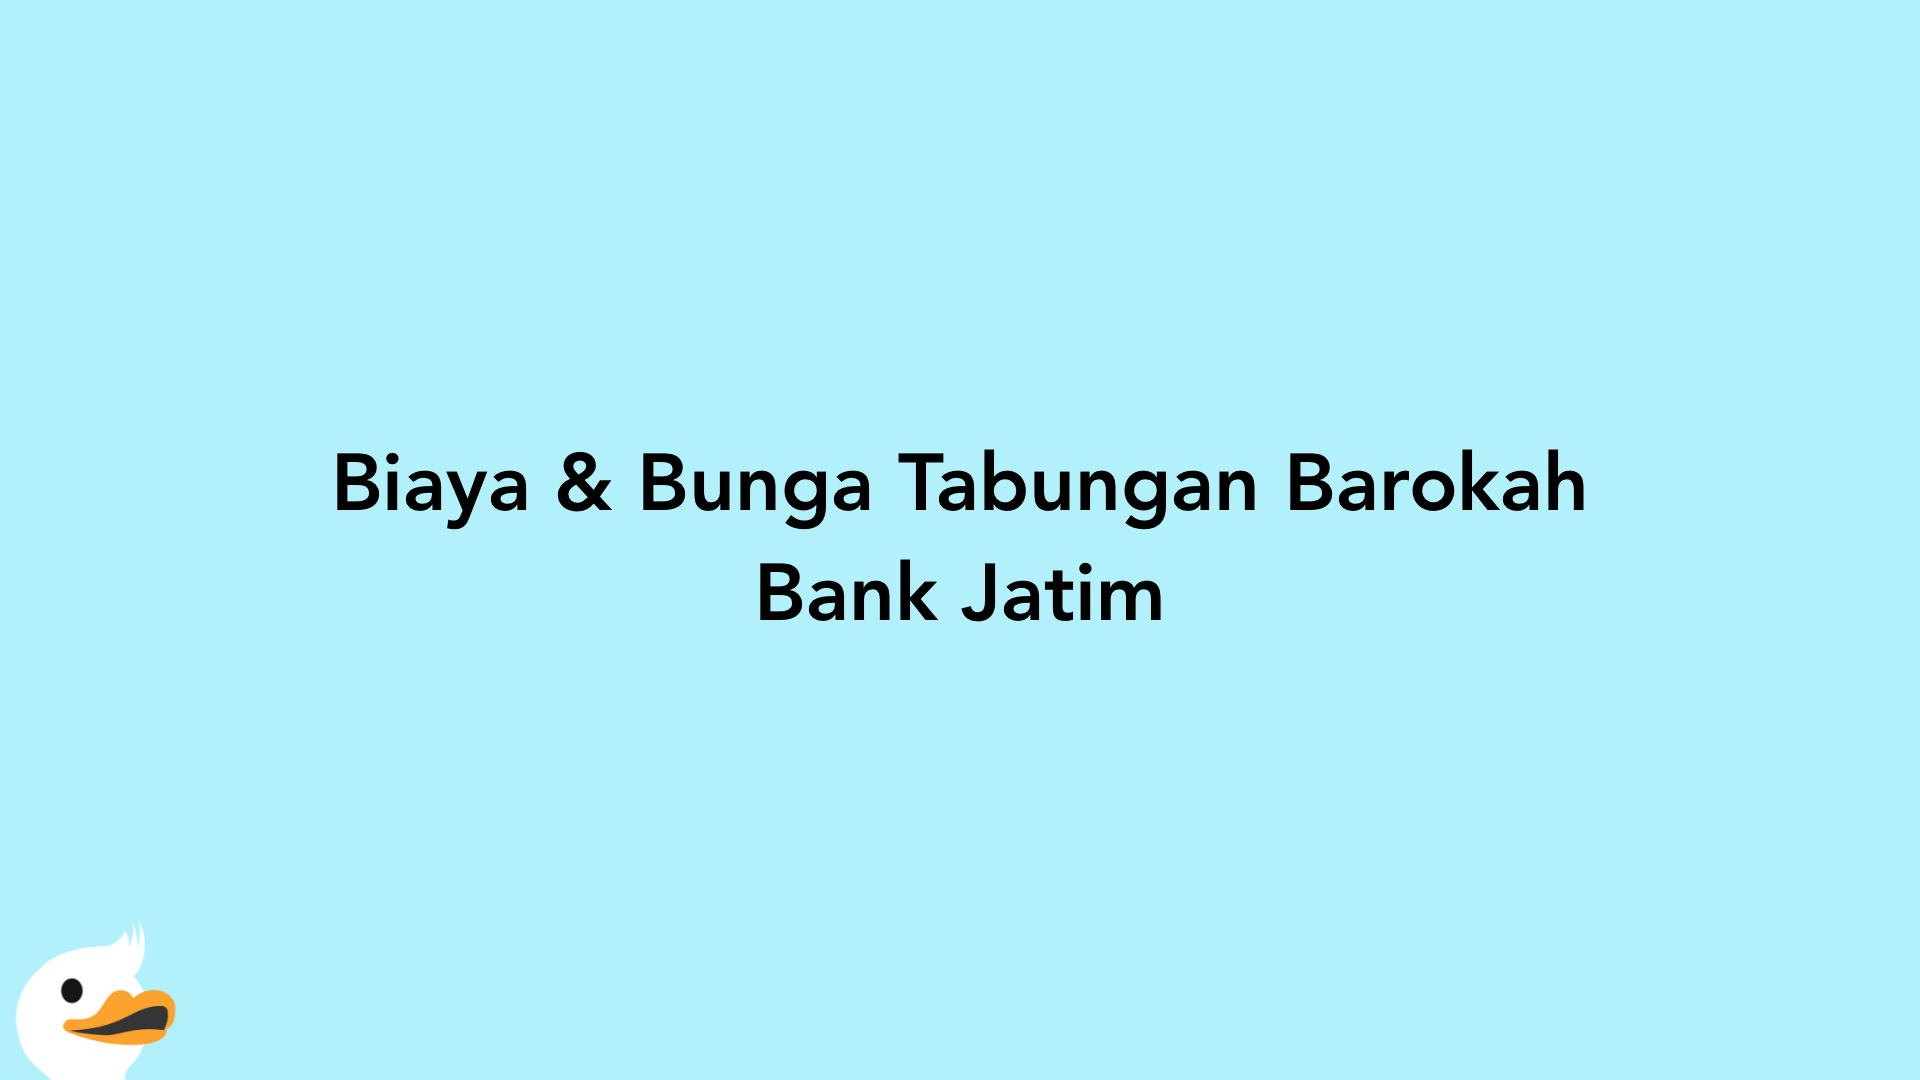 Biaya & Bunga Tabungan Barokah Bank Jatim